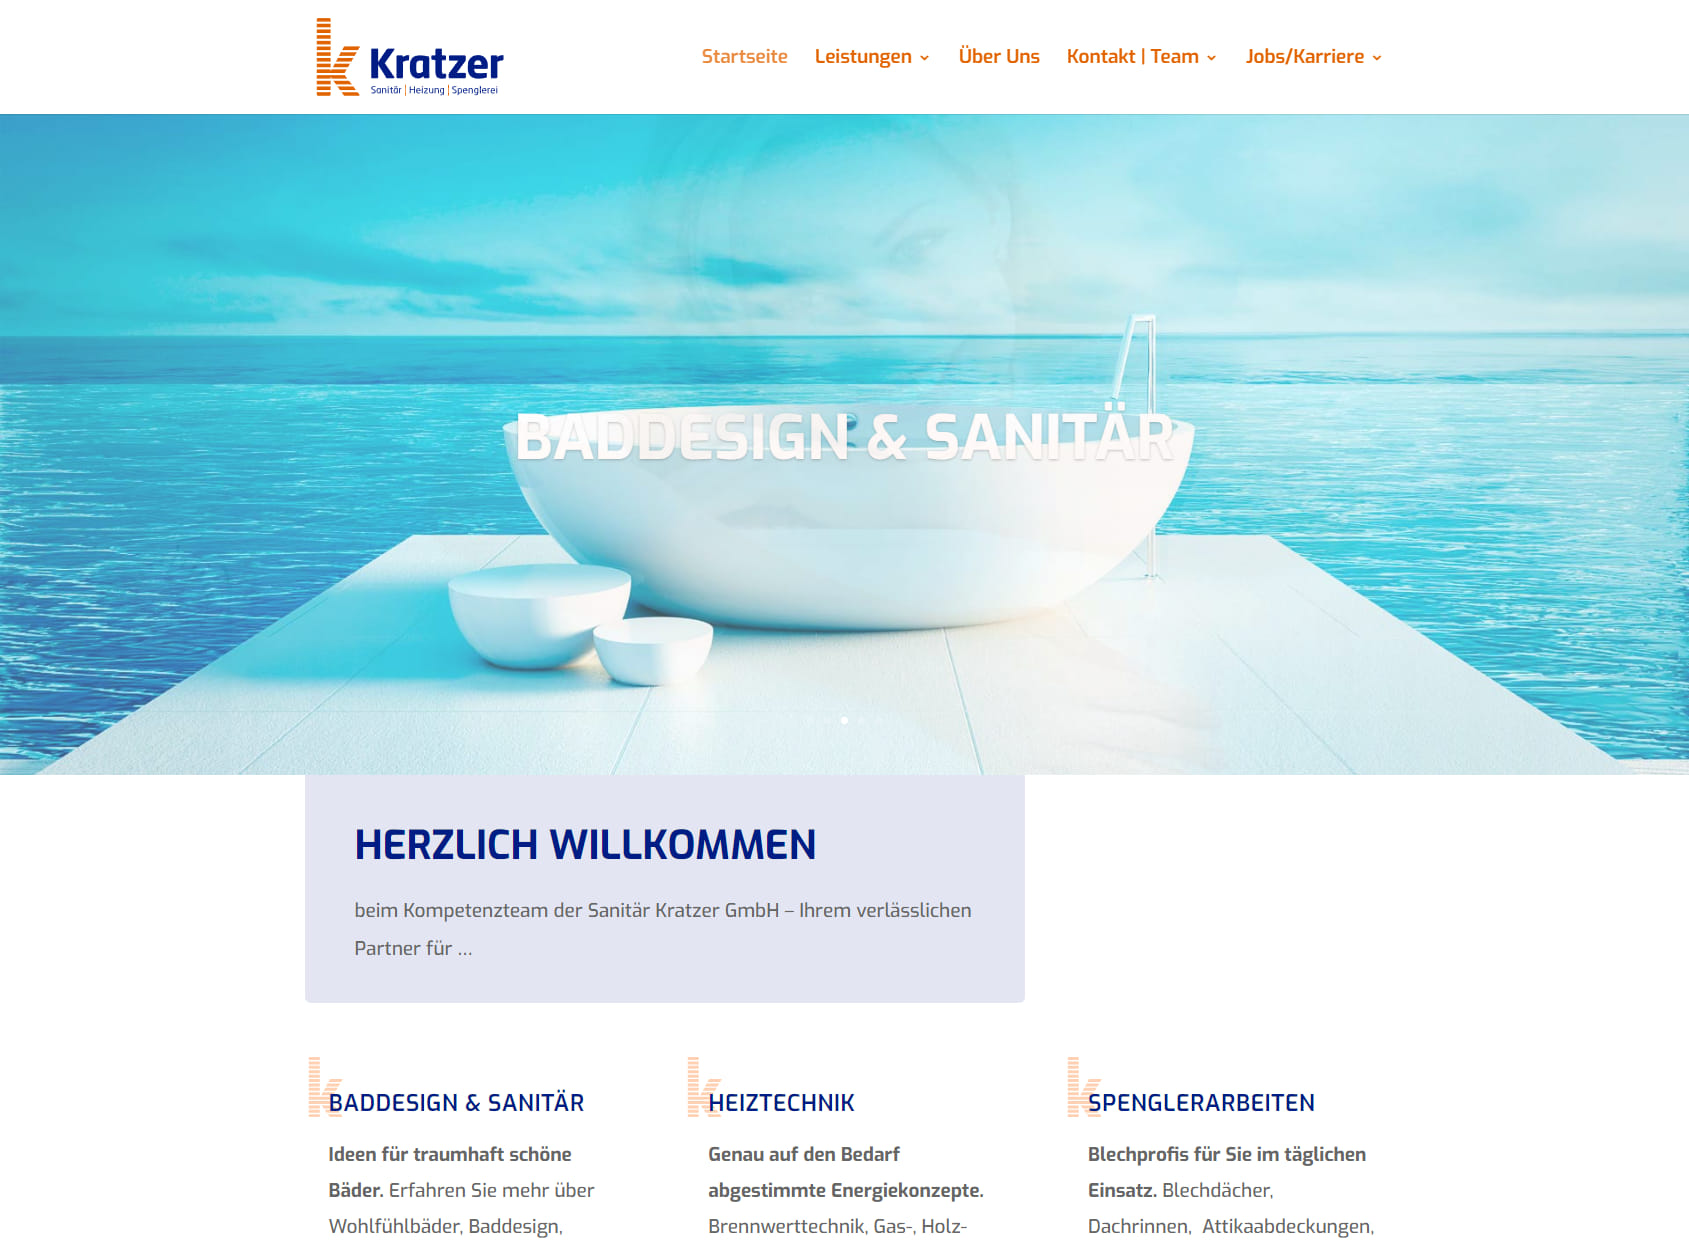 M. Kratzer Sanitär Heizung Spenglerei GmbH